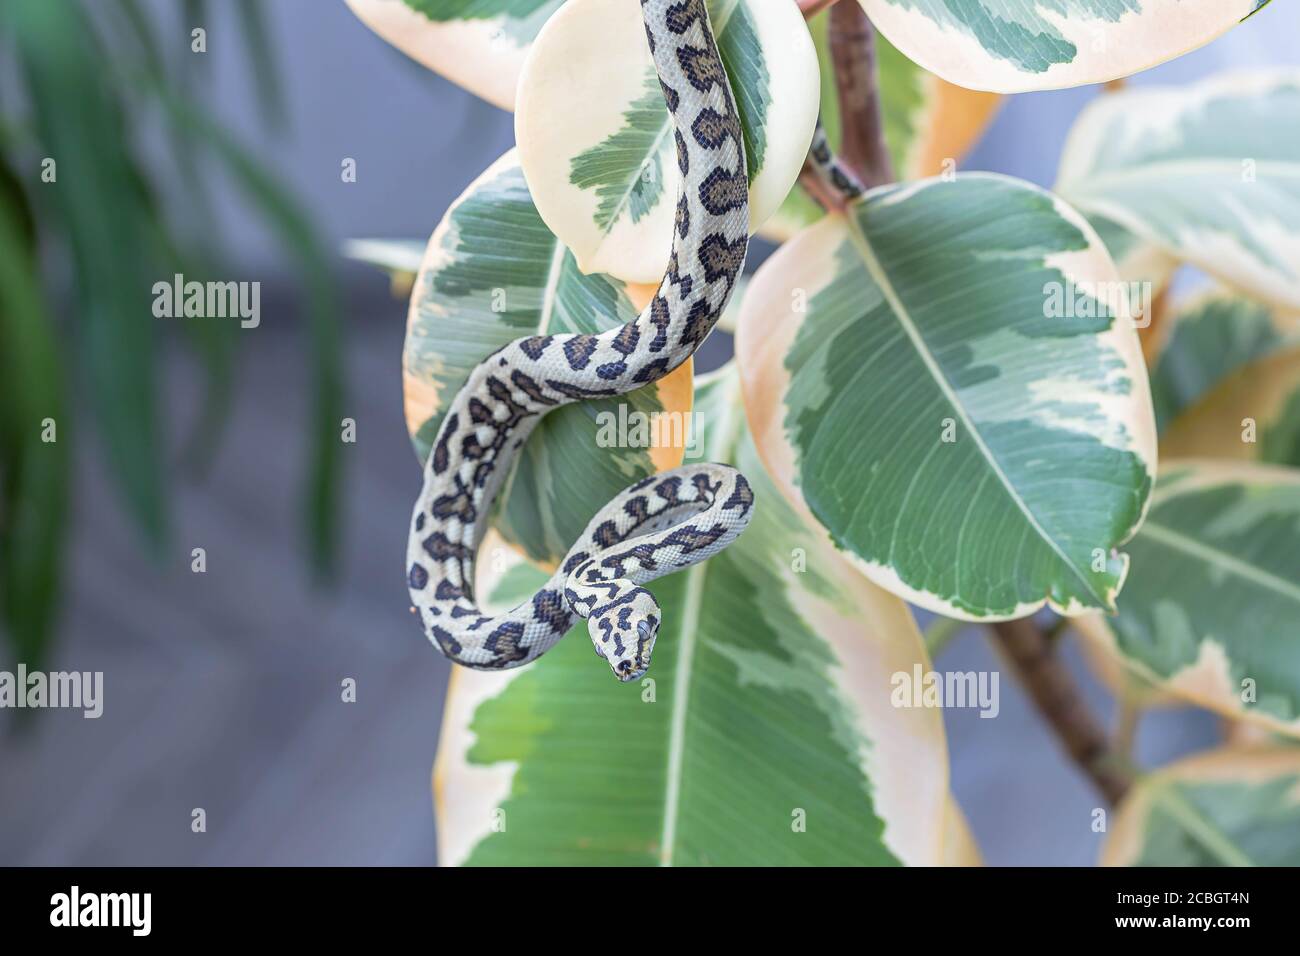 Gros plan de morelia spilota suspendu sur les feuilles de caoutchouc fig. Serpent, animal exotique. Macro. Papier peint, affiche, fond d'écran Banque D'Images